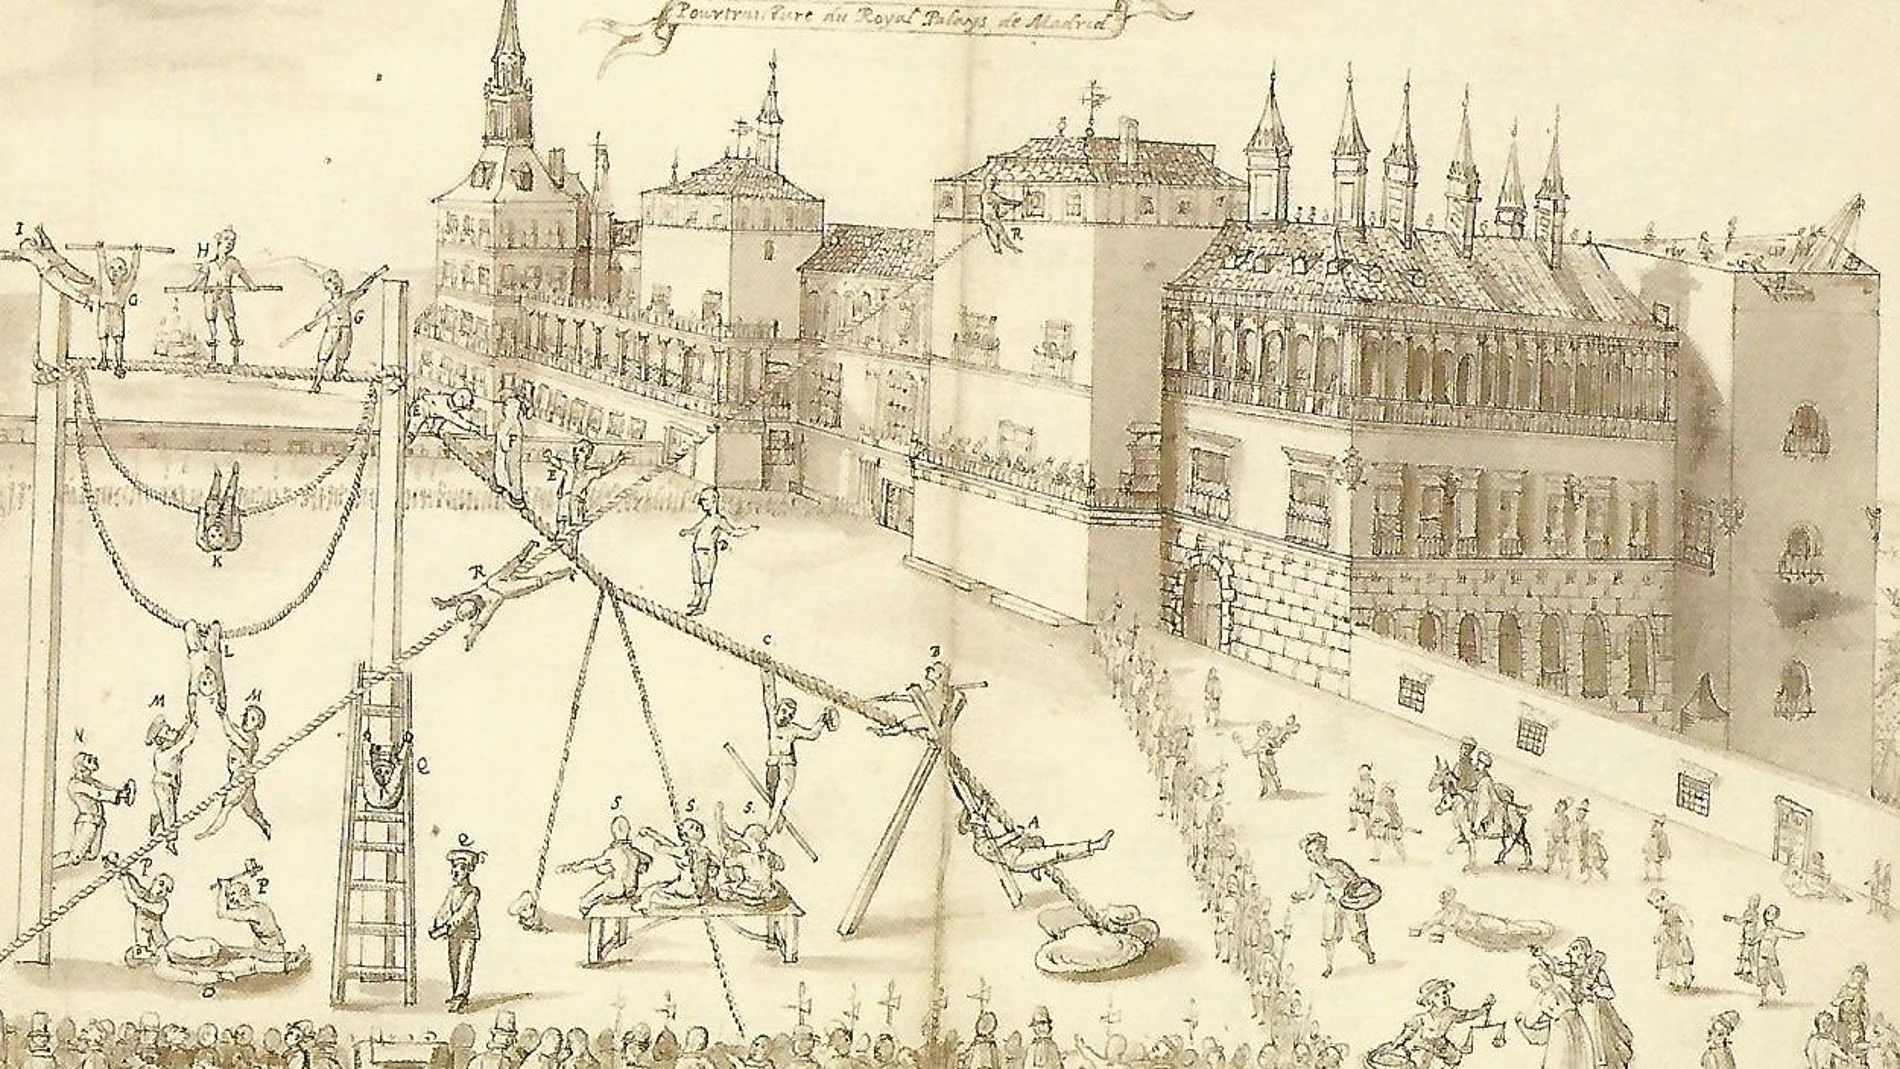 La plaza delantera del alcázar de Madrid, a finales del siglo XVI, con sus saltimbanquis, mendigos y la guardia real. Jean Lhermite, Pasatiempos